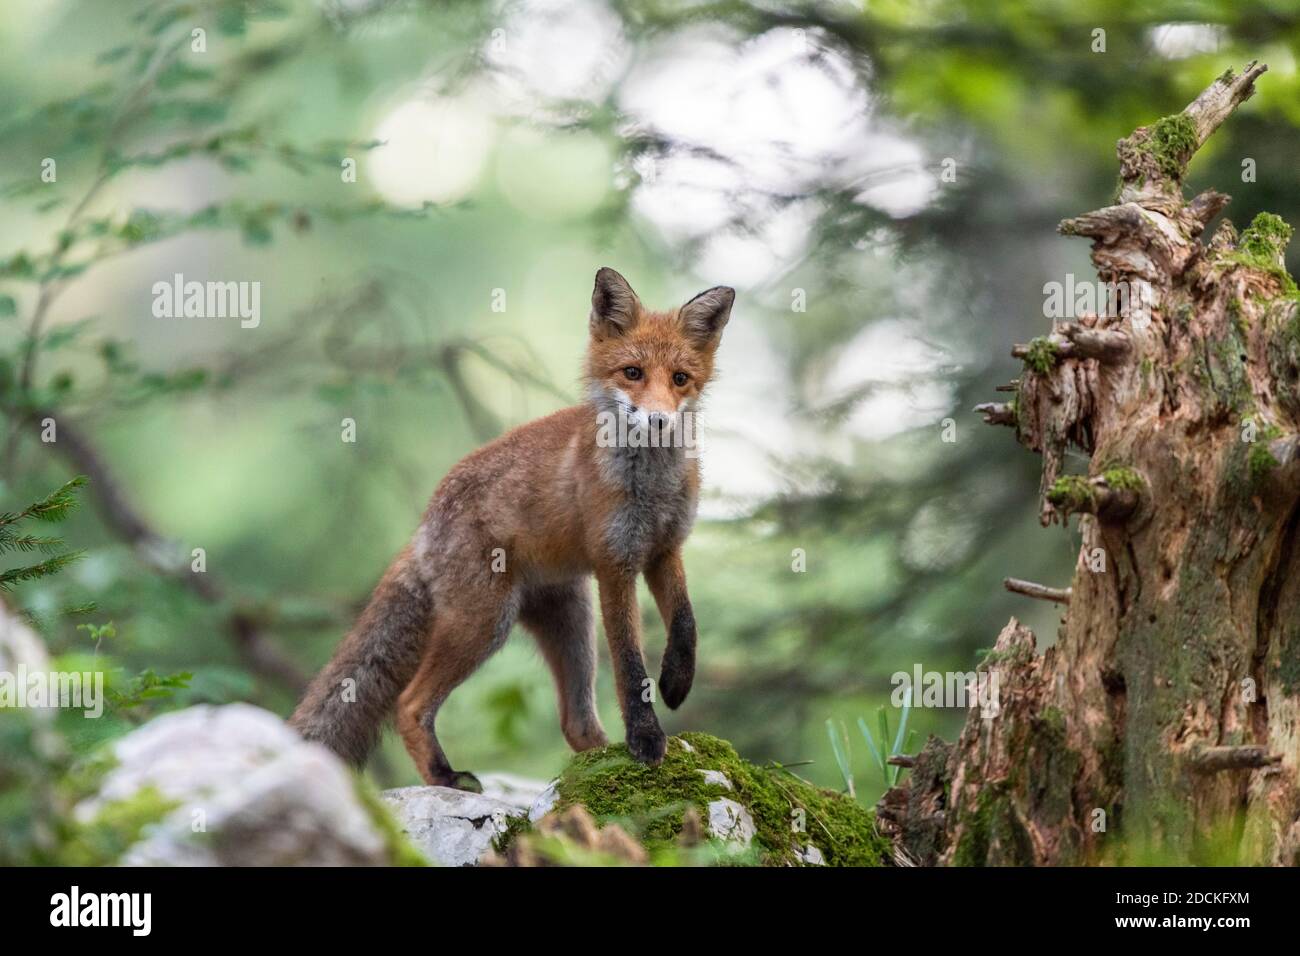 Red fox (Vulpes vulpes) in the forest, Notranjska region, Slovenia Stock Photo